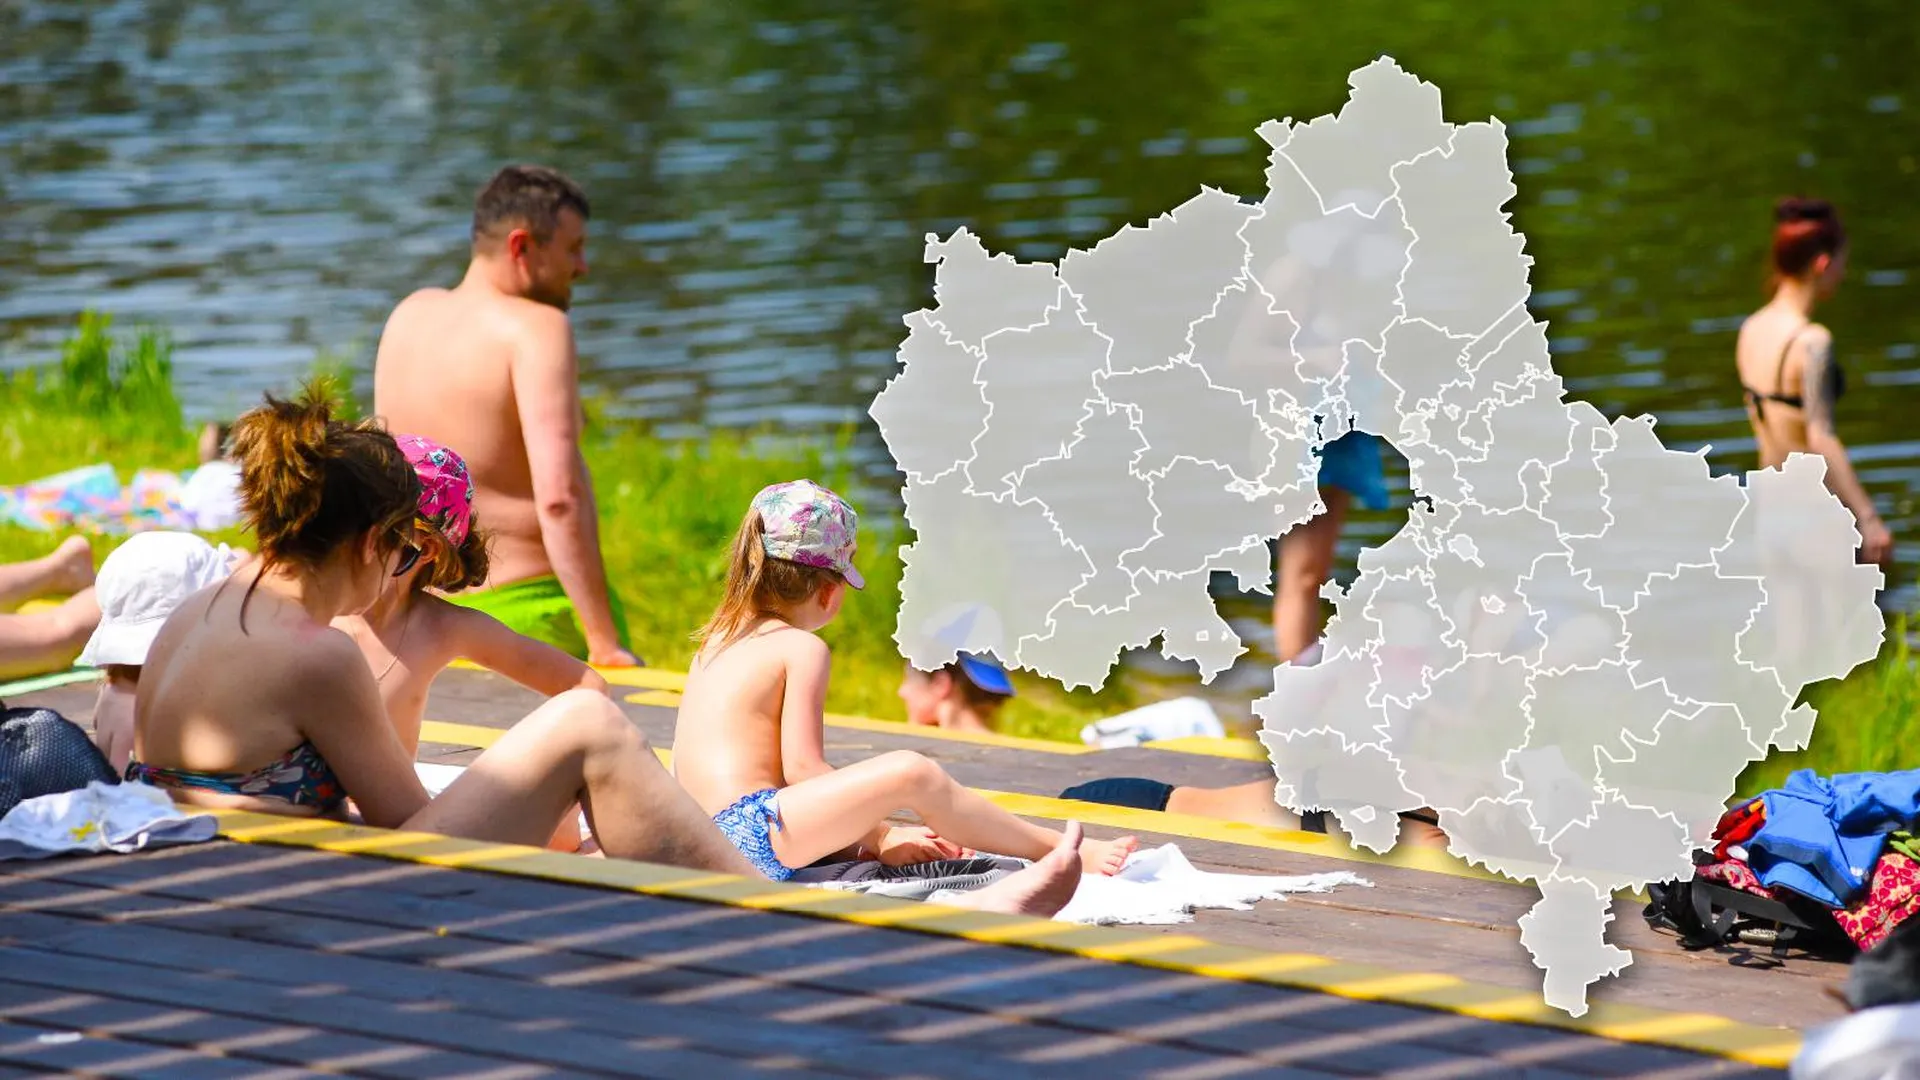 Пляжники на берегу реки и карта Московской области